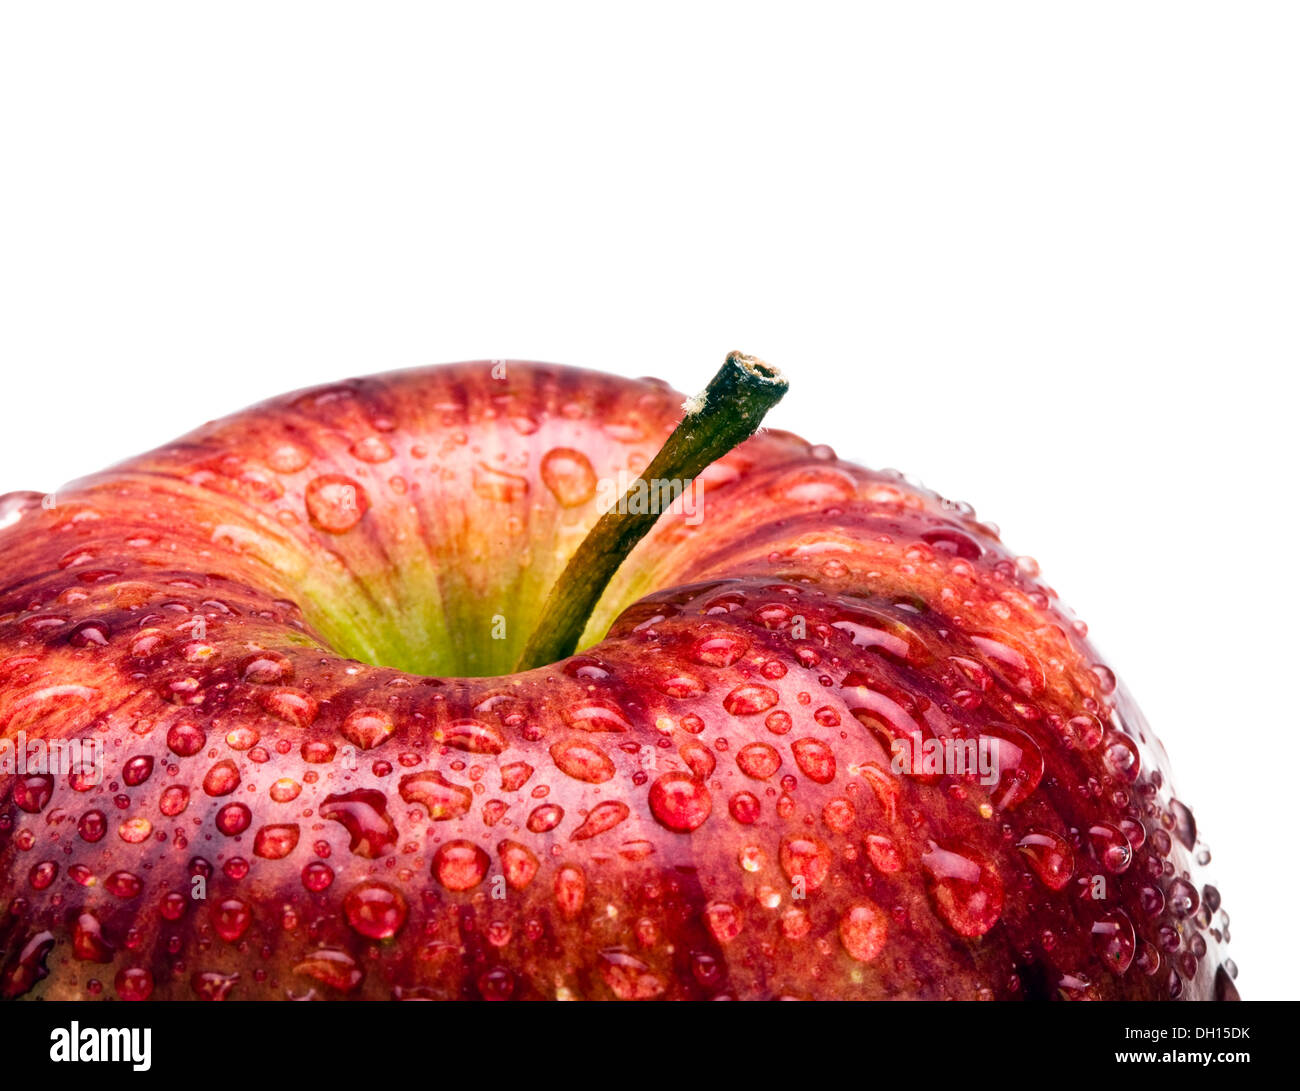 Juicy apple en goutte d'eau Banque D'Images